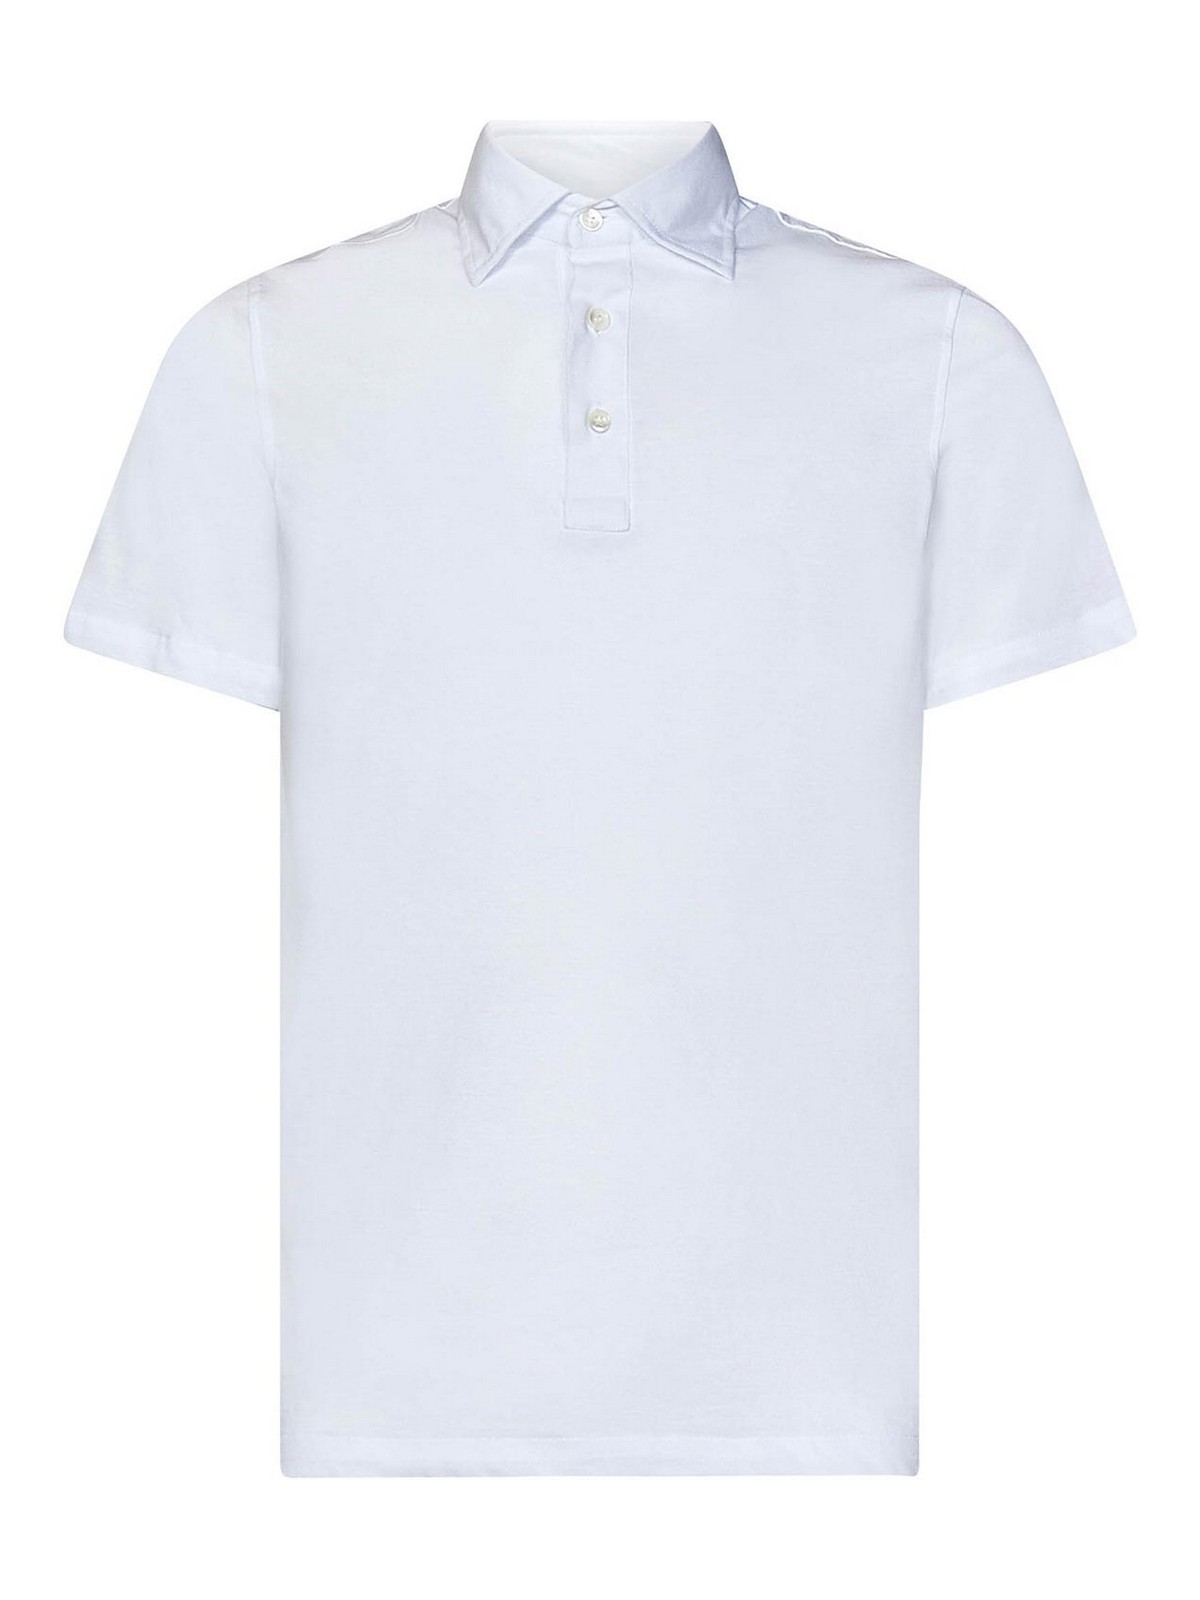 Luigi Borrelli White Cotton Jersey Polo Shirt